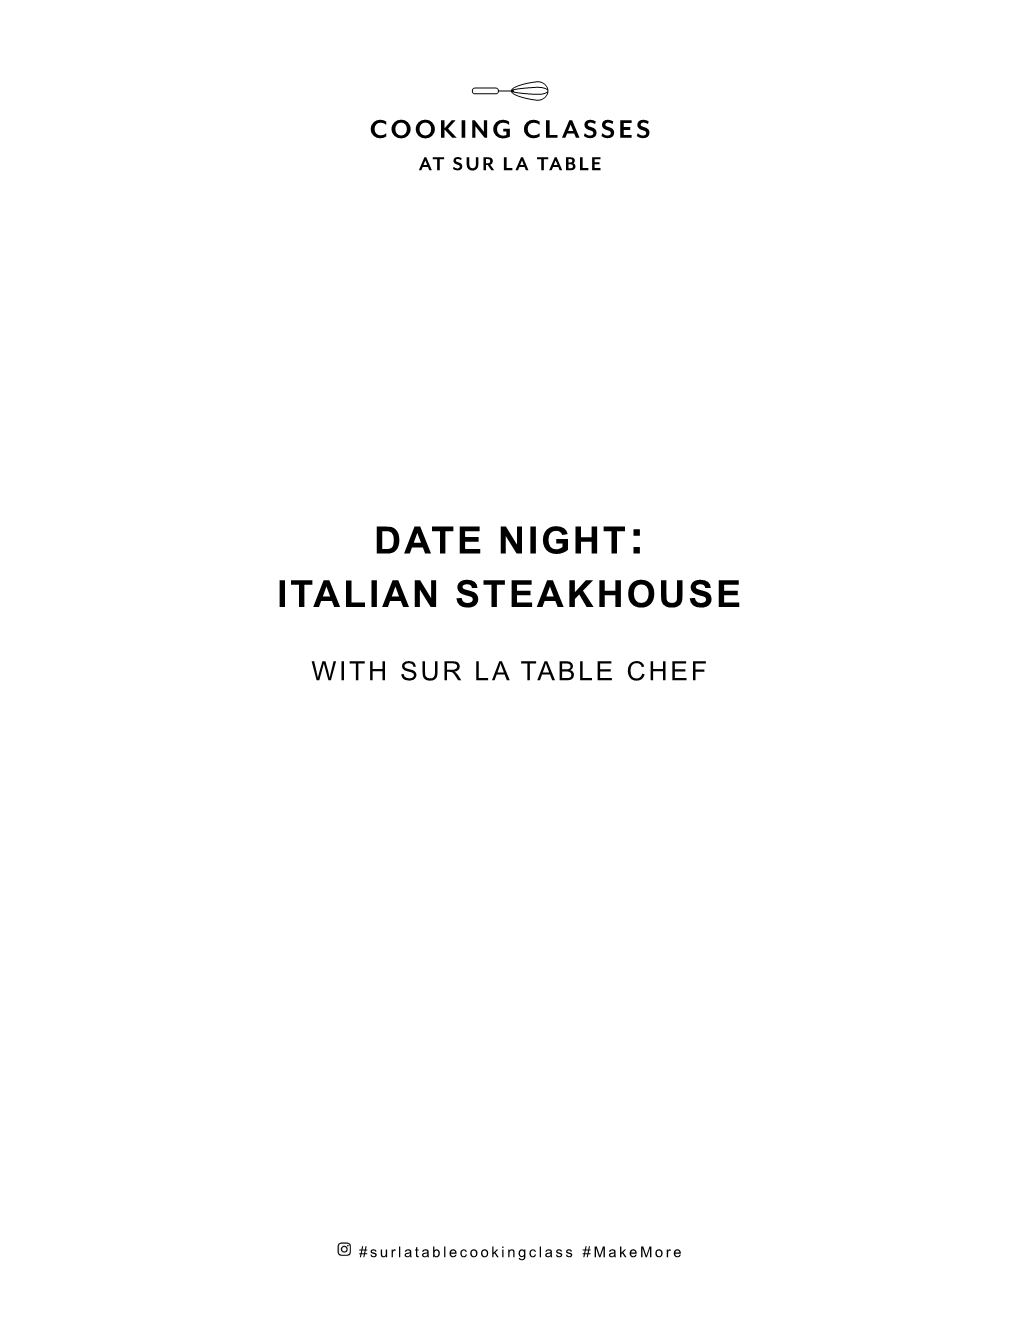 Italian Steakhouse